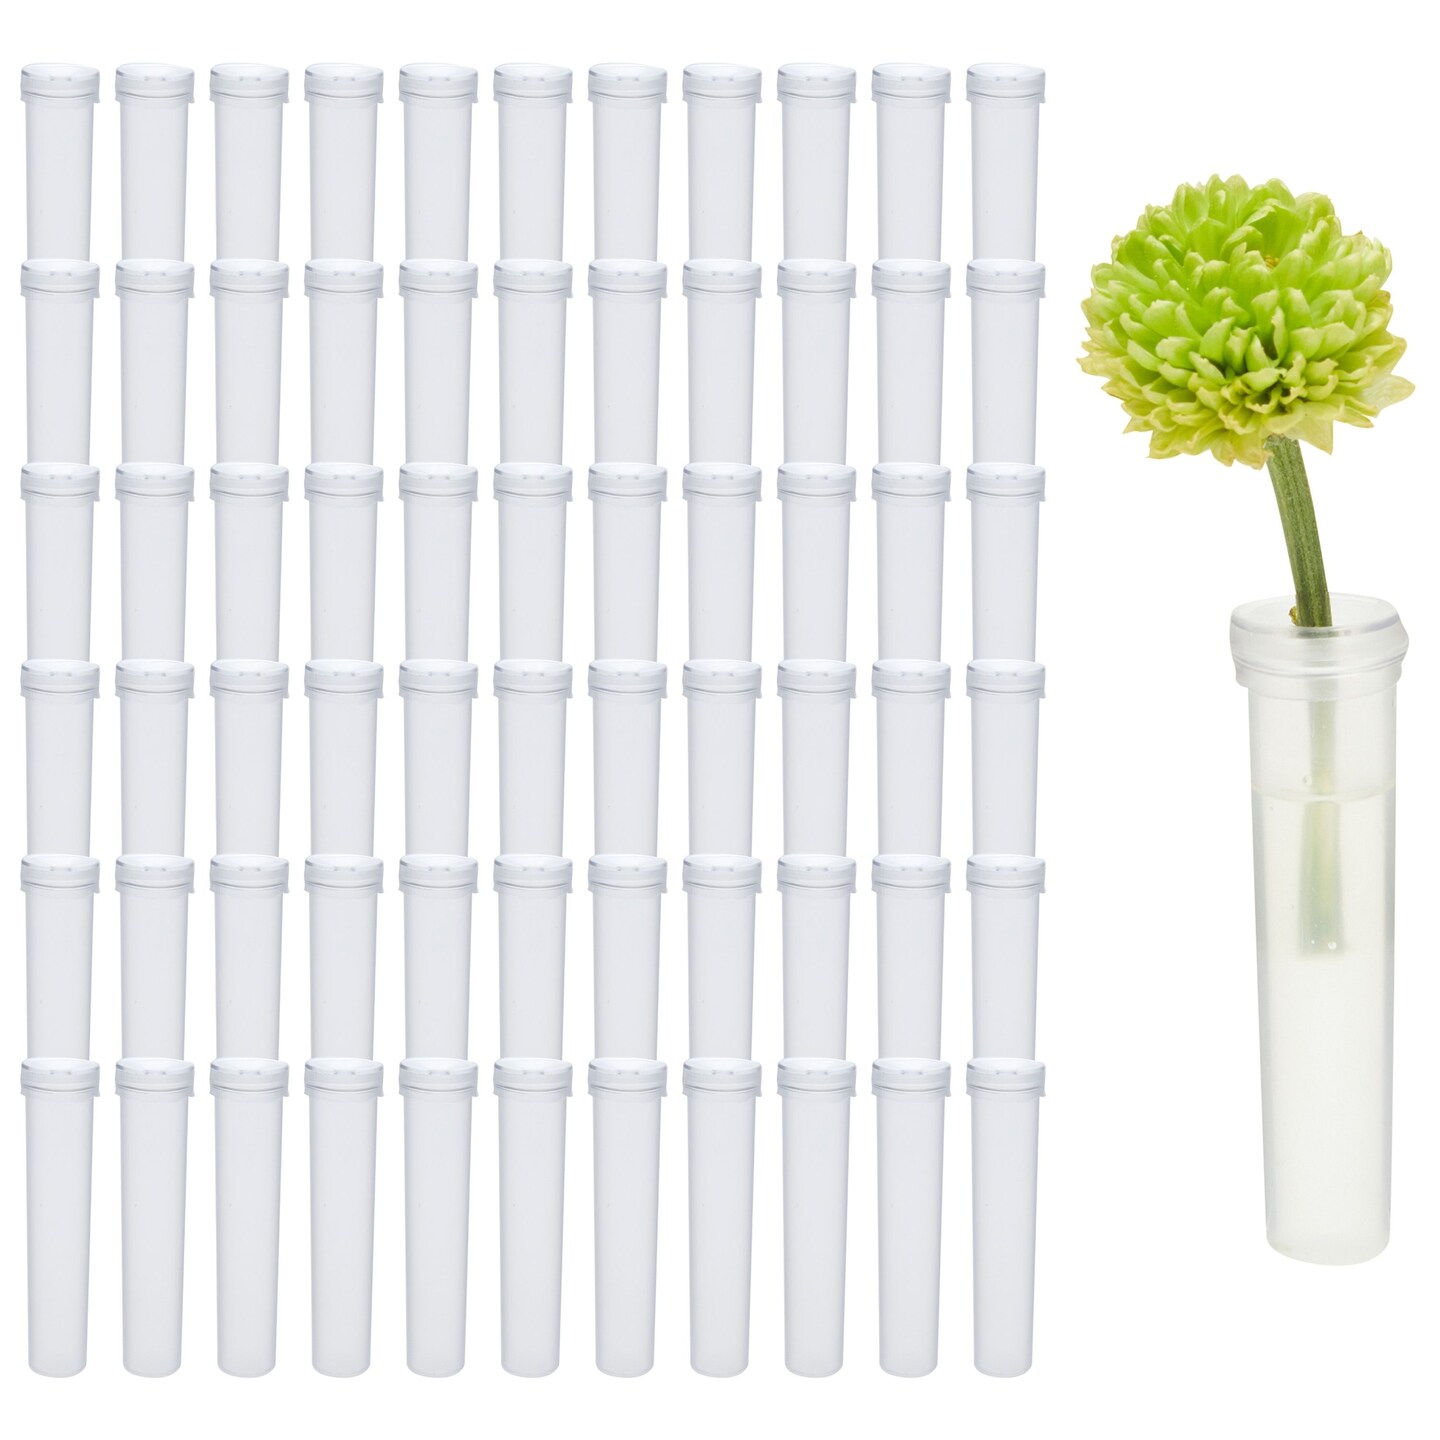 Wholesale Plastic Floral Water Tubes/Vials for Flower Arrangements